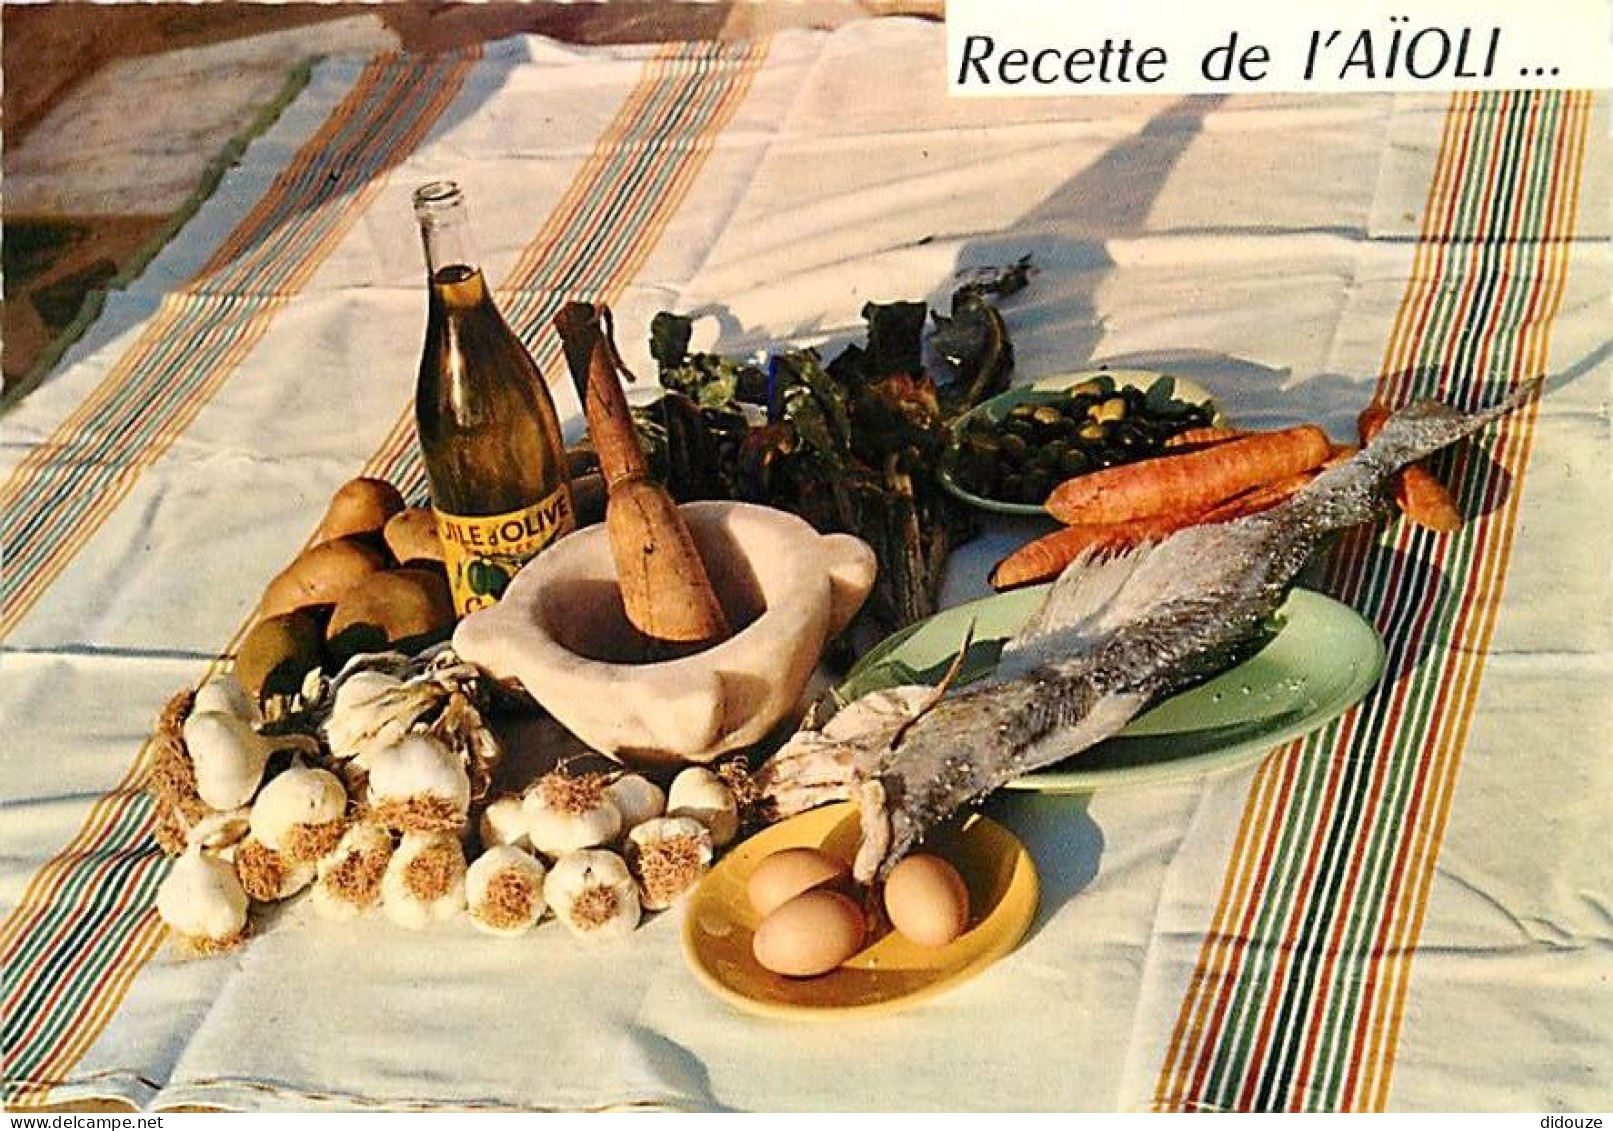 Recettes De Cuisine - Aïoli - Carte Neuve - Gastronomie - CPM - Voir Scans Recto-Verso - Recettes (cuisine)